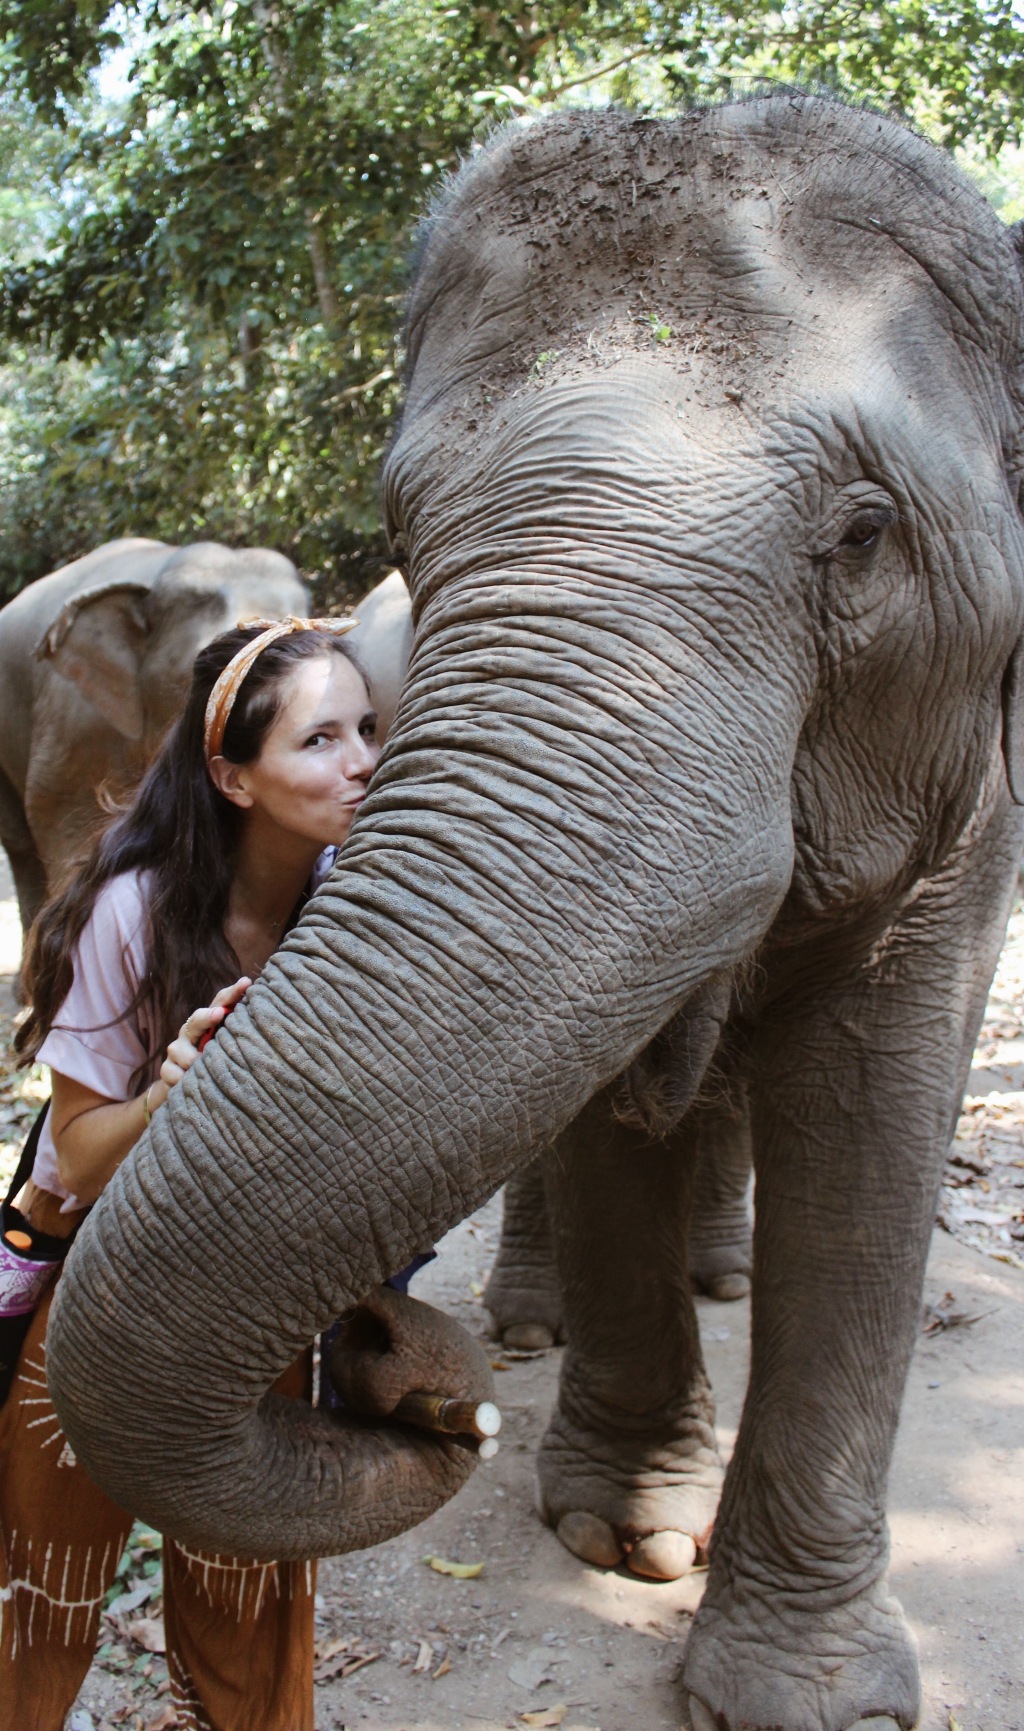 Elephant Kisses, not Elephant Rides.